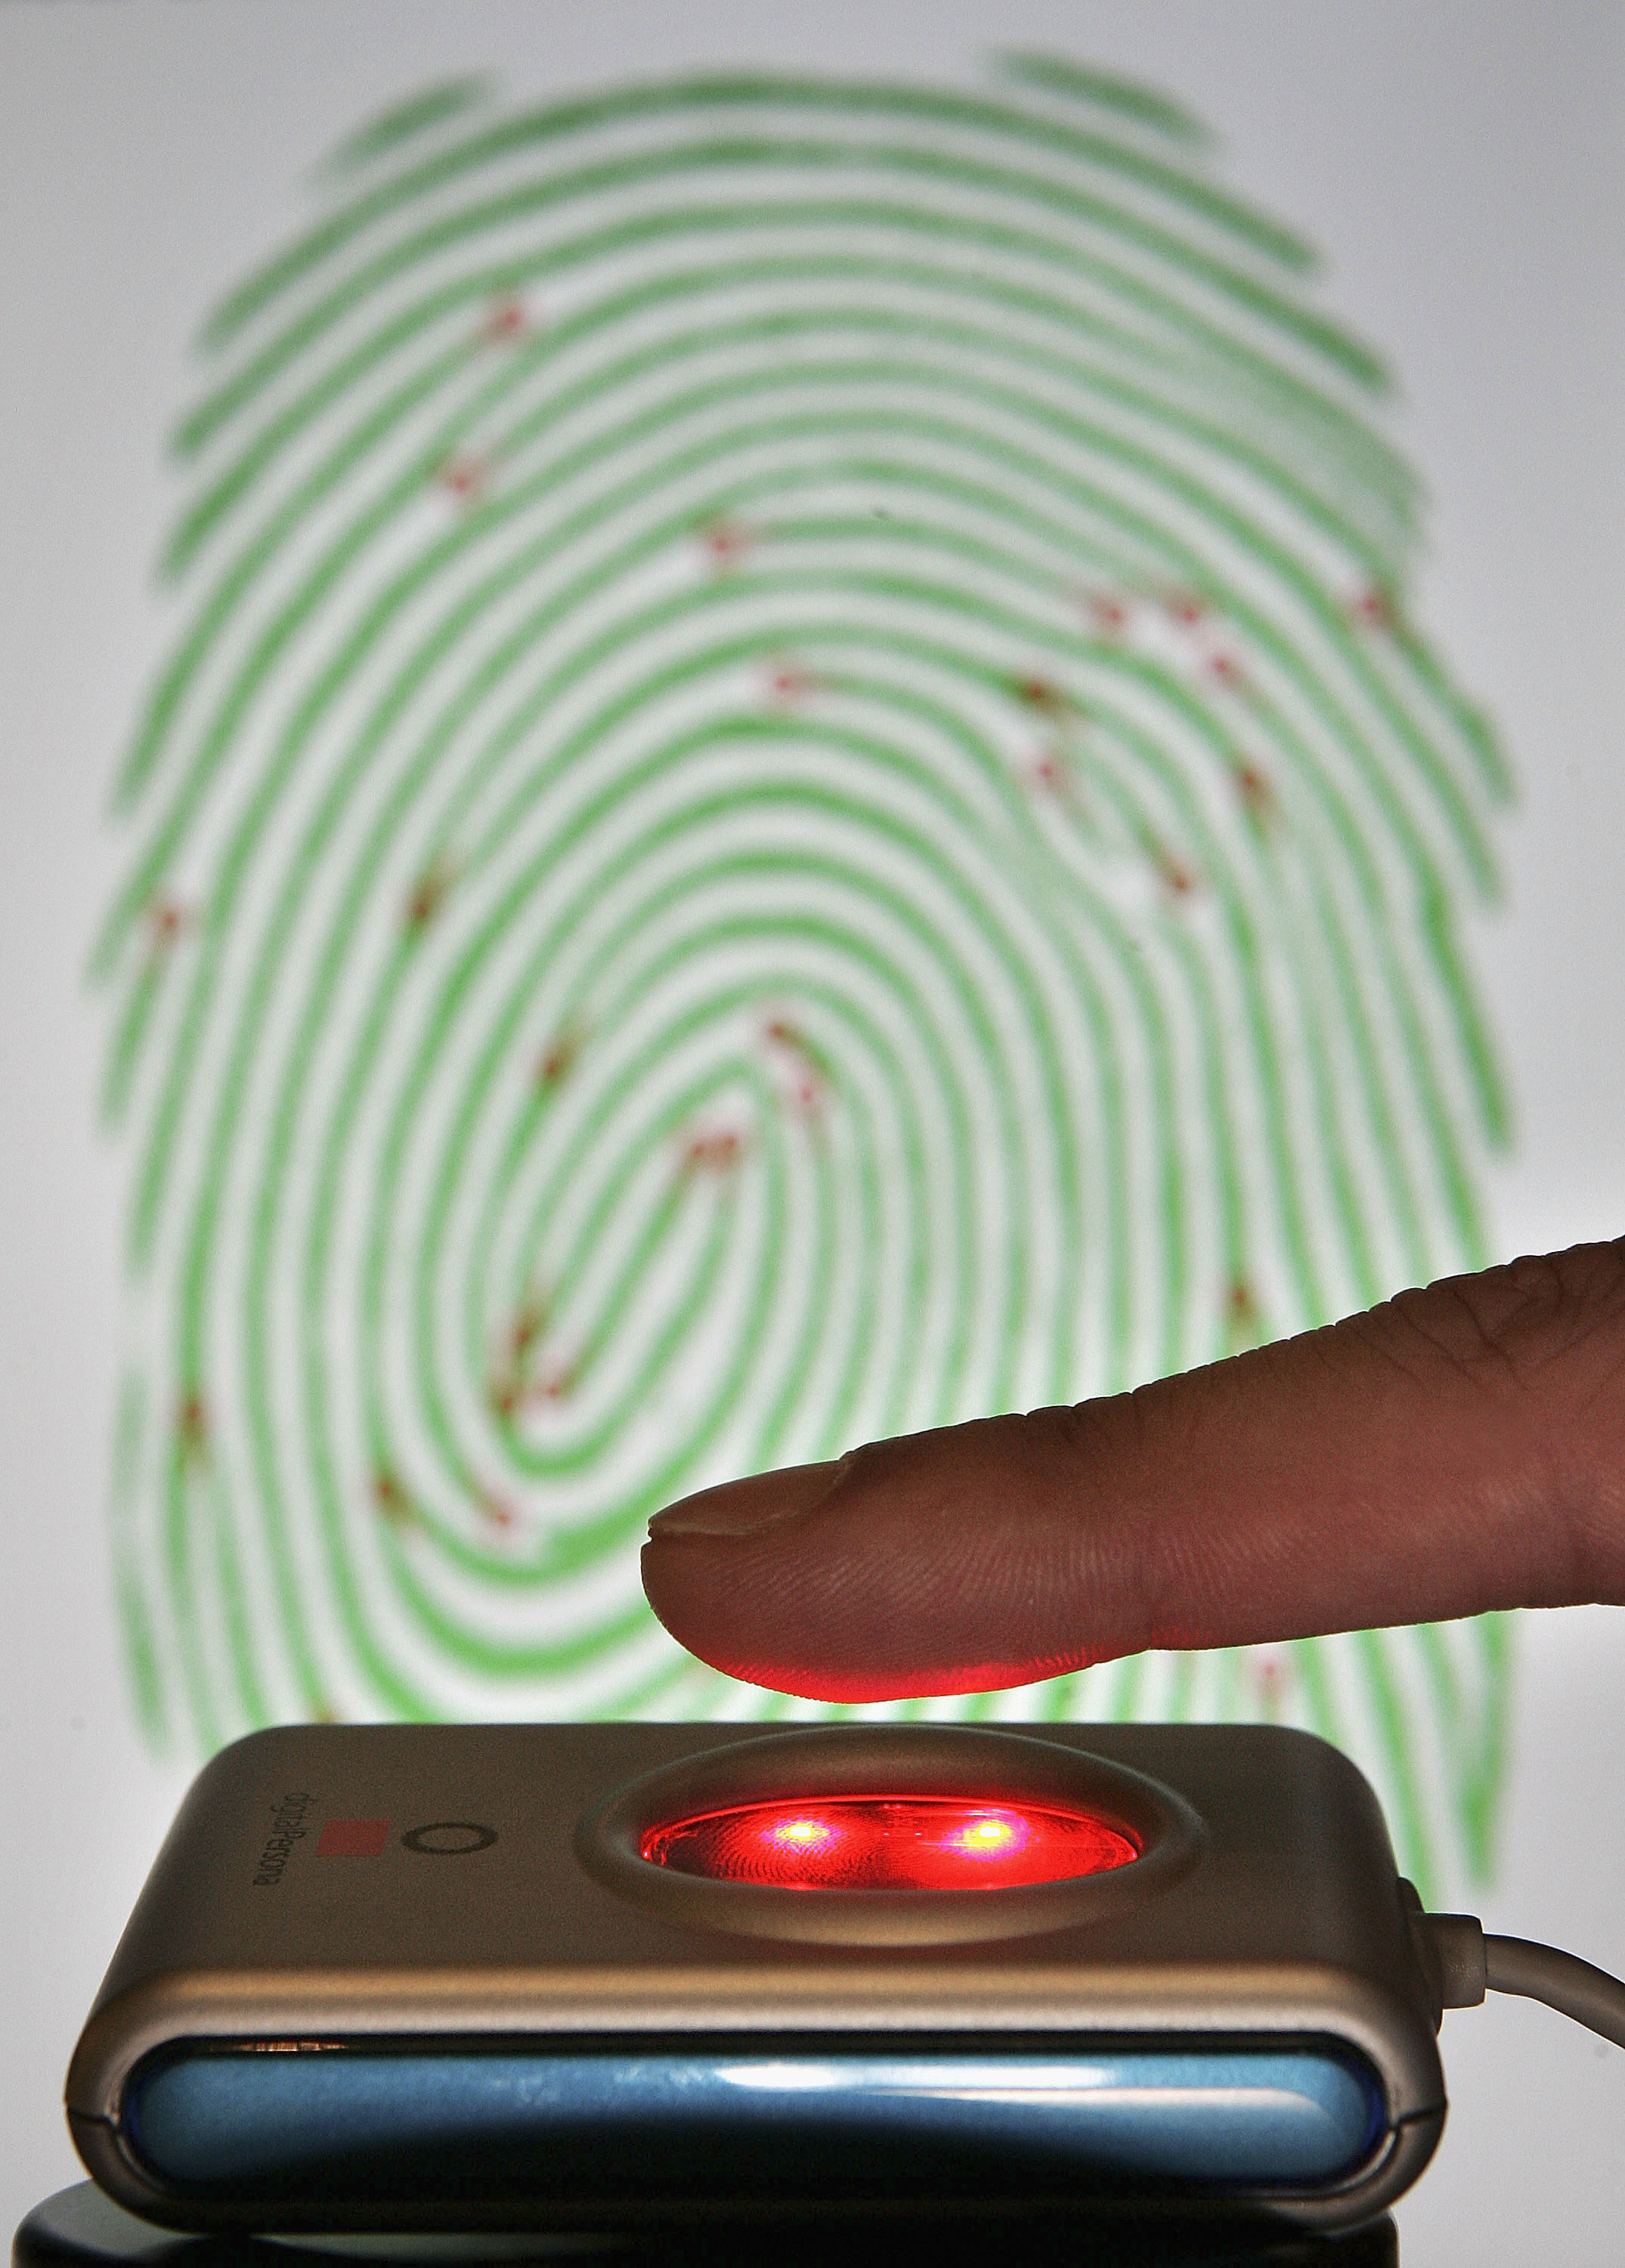 Password Fingerprints Fifth Amendment